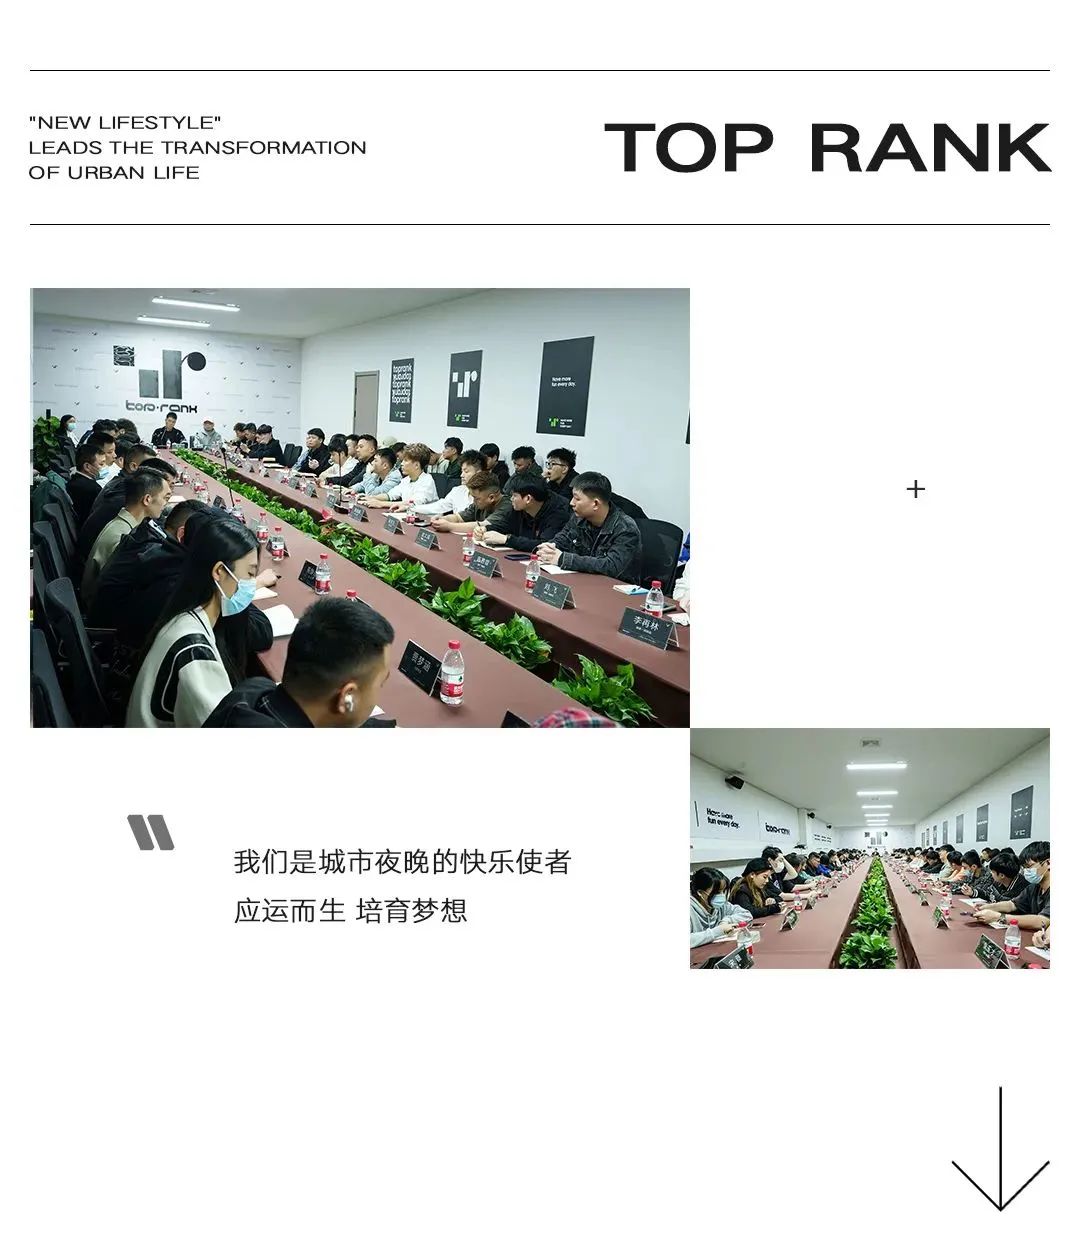 未来将至，蓄势待发 | TOP RANK杭州-杭州TR酒吧/TopRank